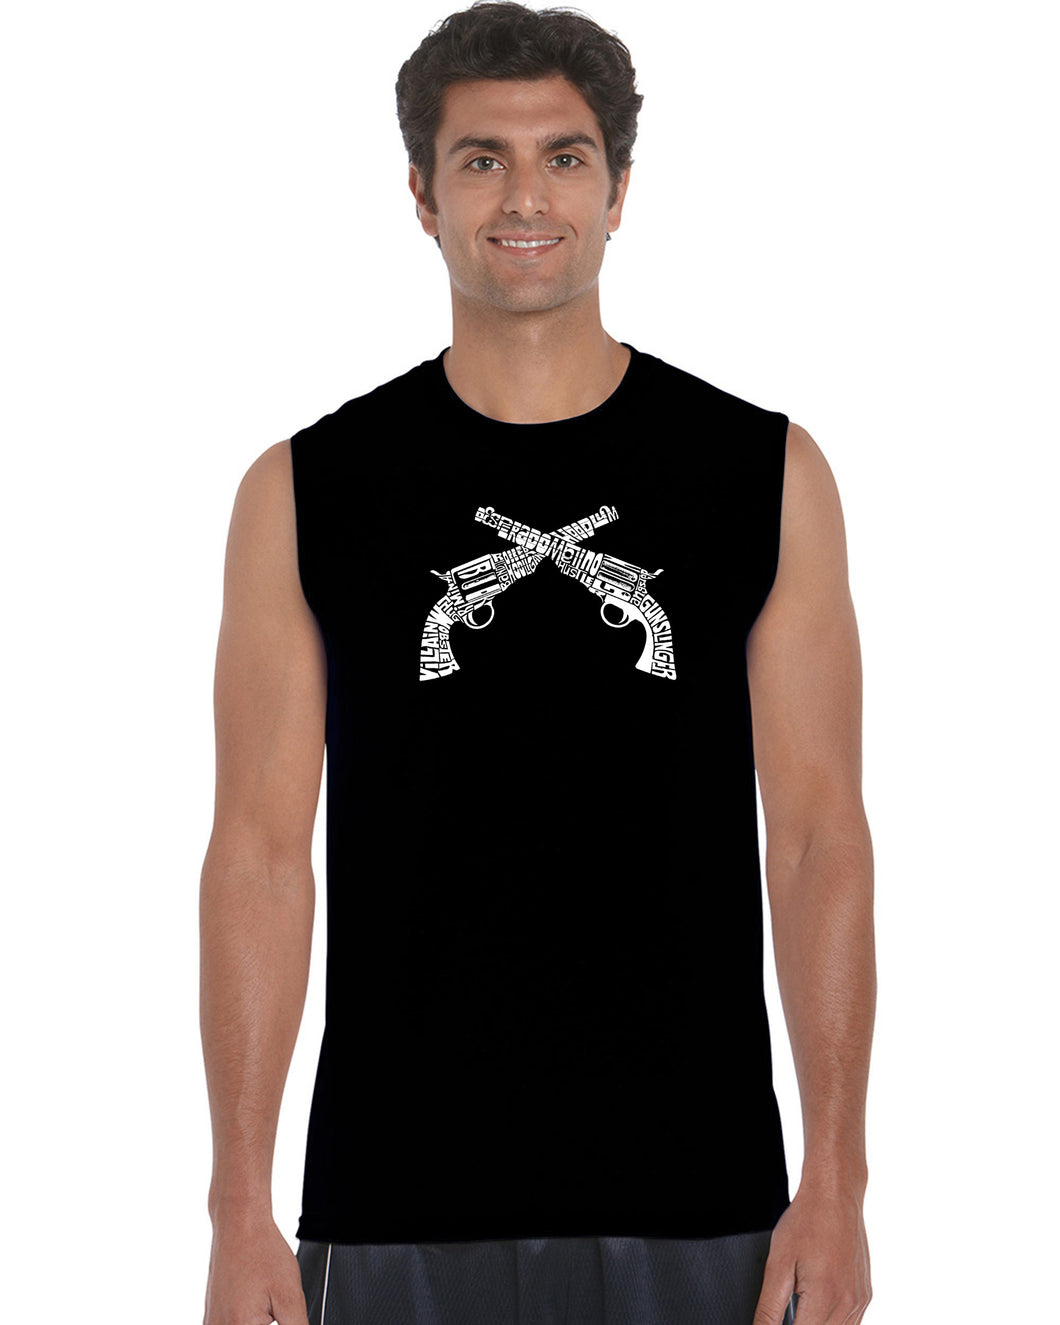 CROSSED PISTOLS - Men's Word Art Sleeveless T-Shirt